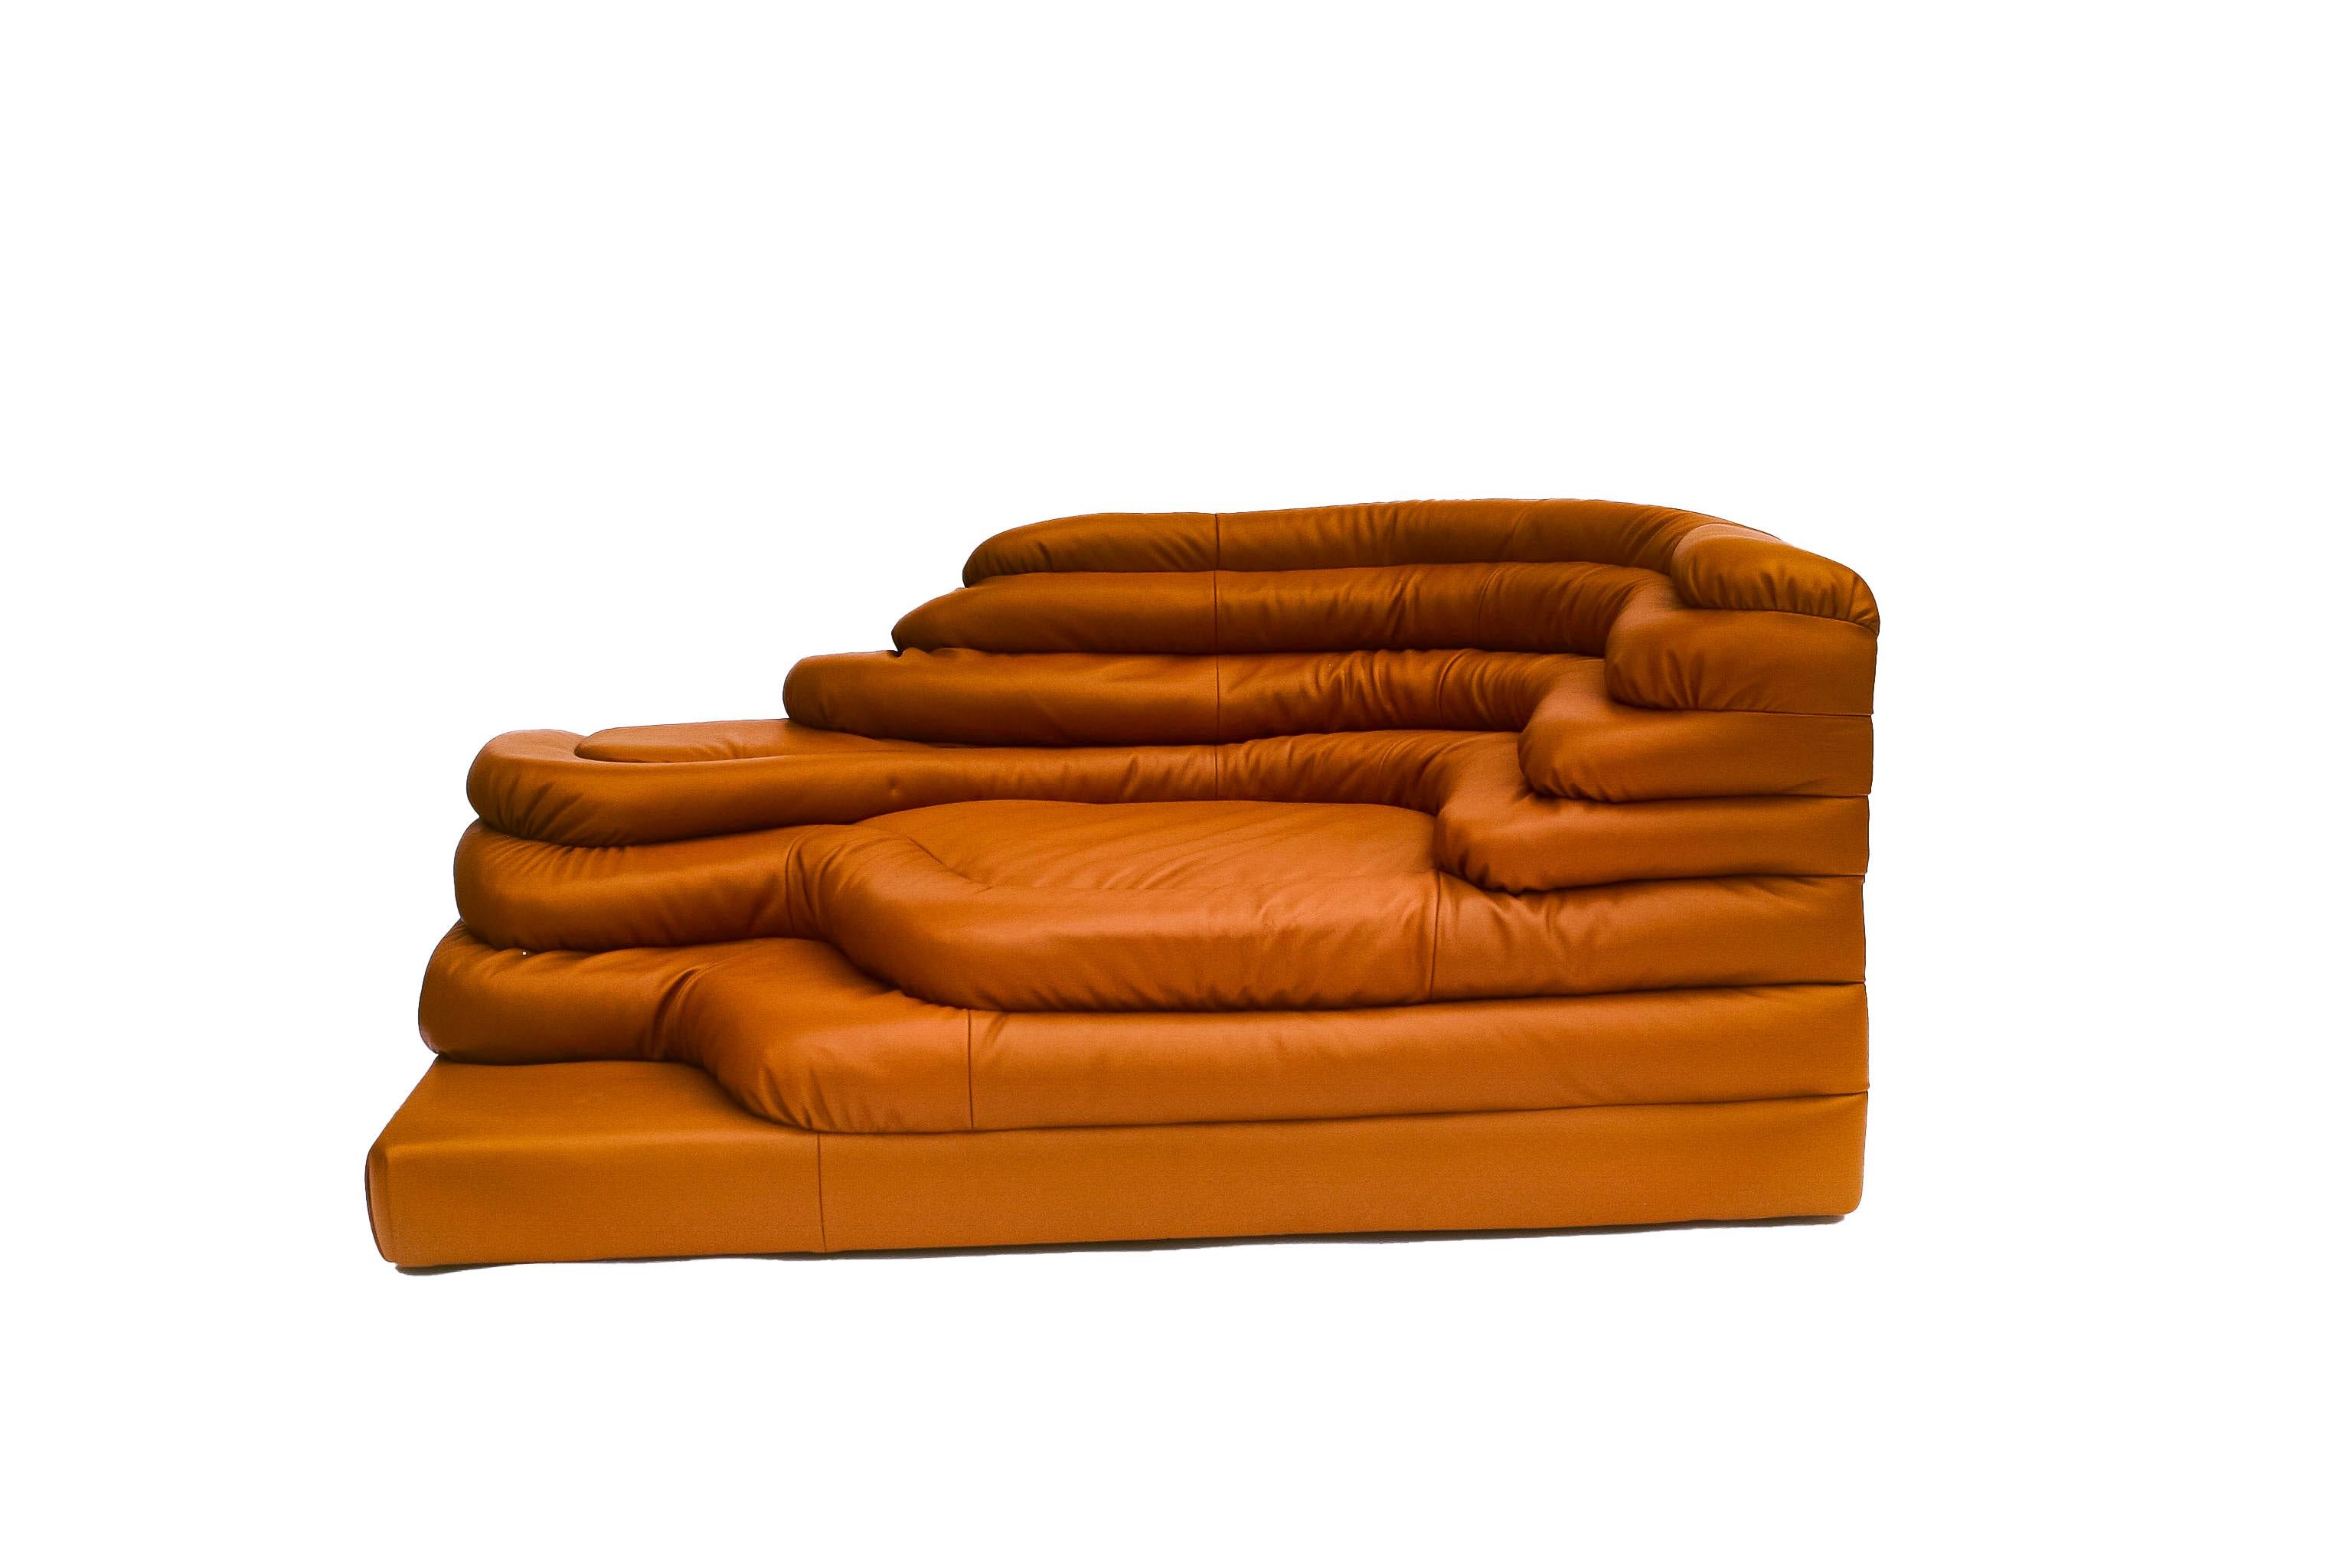 Erhöhen Sie Ihren Raum mit der zeitlosen Eleganz der Ubald Klug Leather Terrazza Couch, gepolstert mit hochwertigem Edelman Leder. Dieses kultige Stück ist für seine exquisite Handwerkskunst und seinen luxuriösen Komfort bekannt und zeugt sowohl von